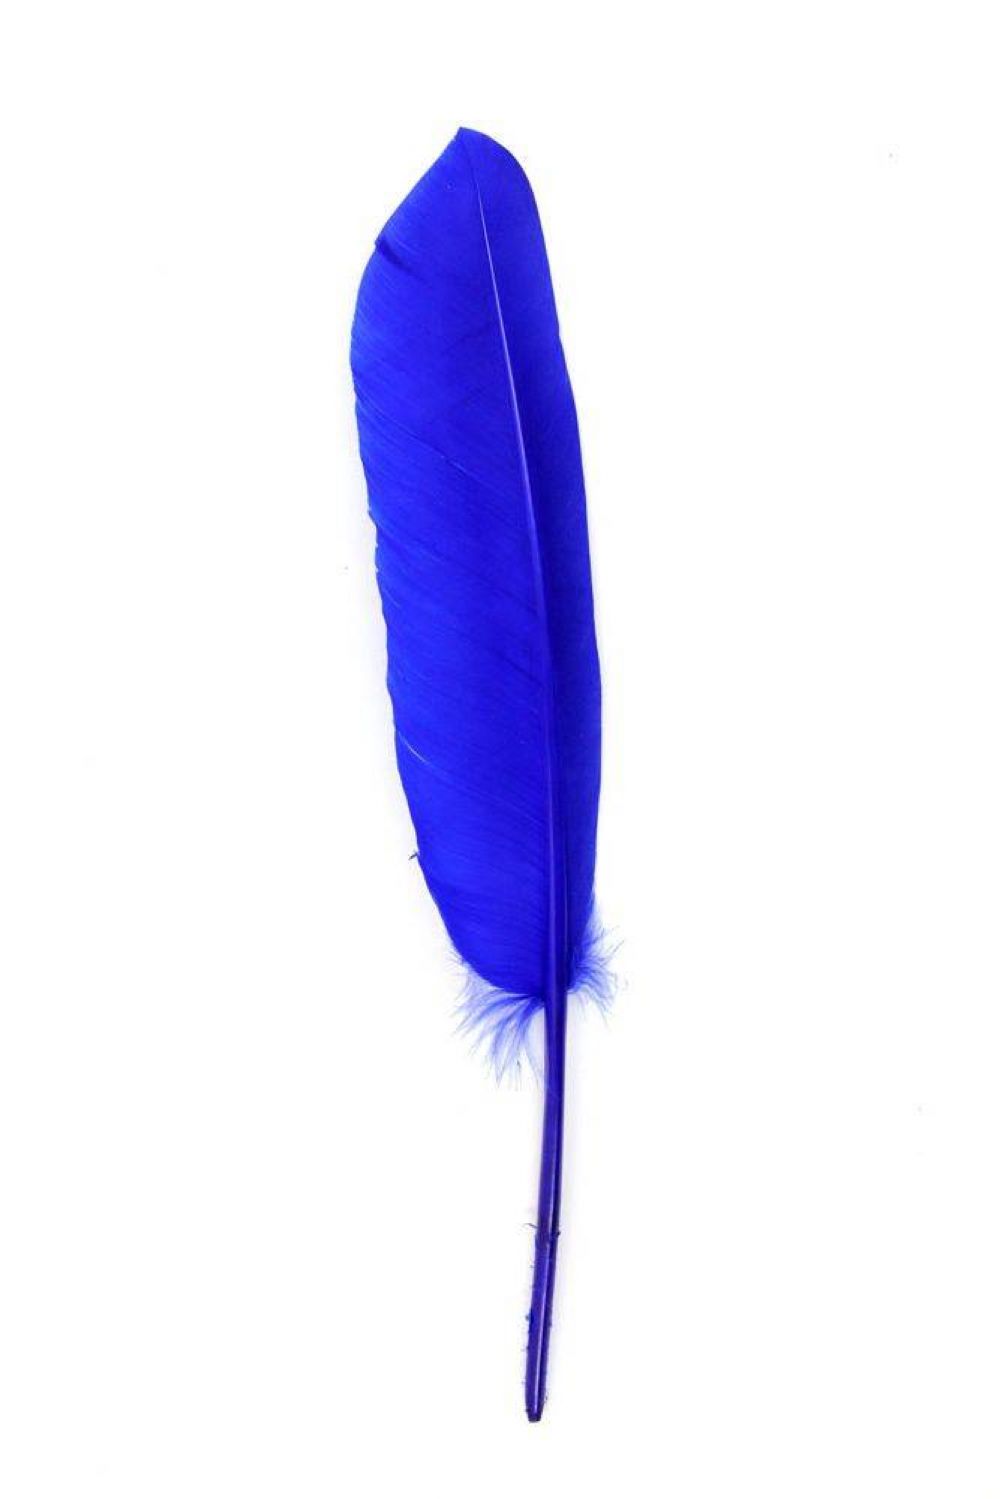 Gänsefeder 22-27cm, blau, links, 10er Pack